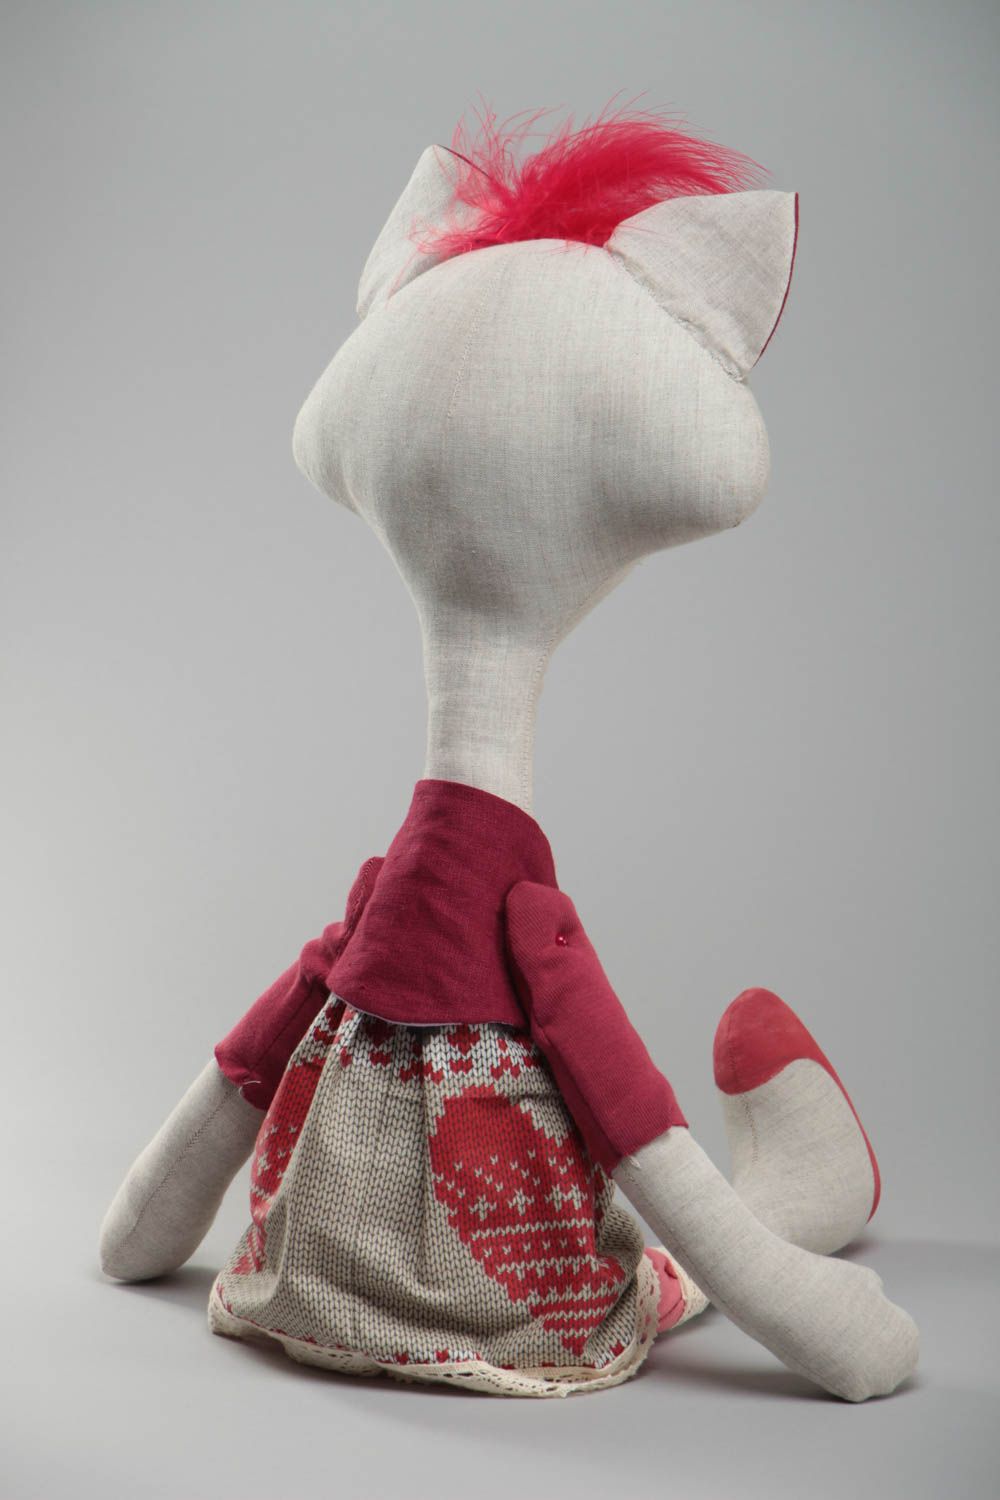 Текстильная игрушка кошка из льна в платье светлая красивая необычная хэнд мейд фото 4